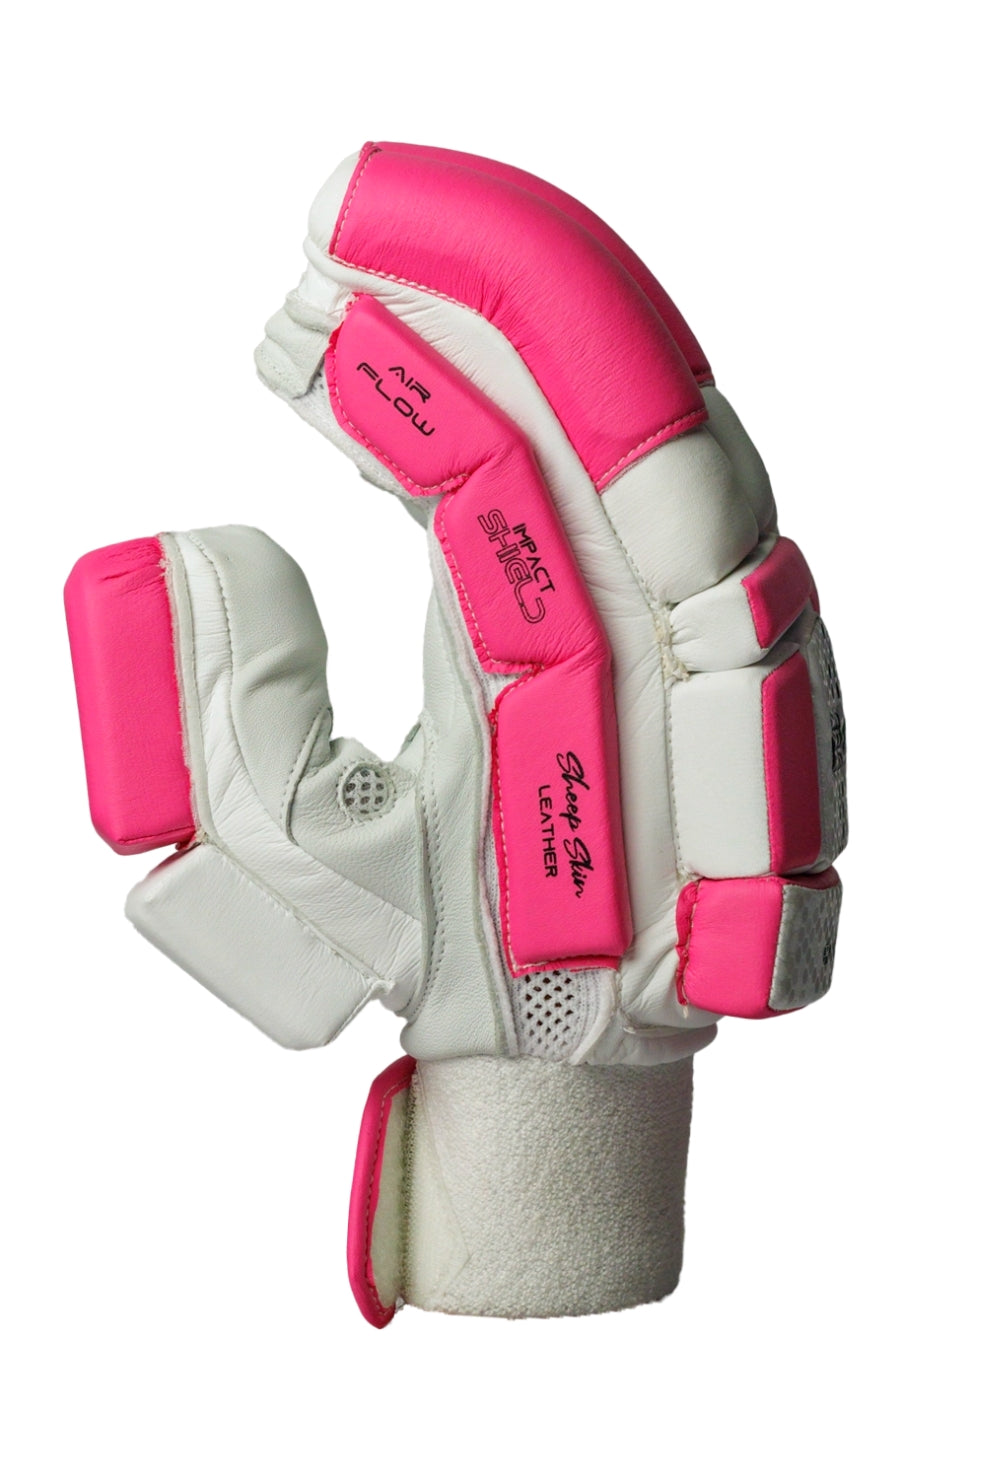 Cricket Batting Gloves - Pink & White